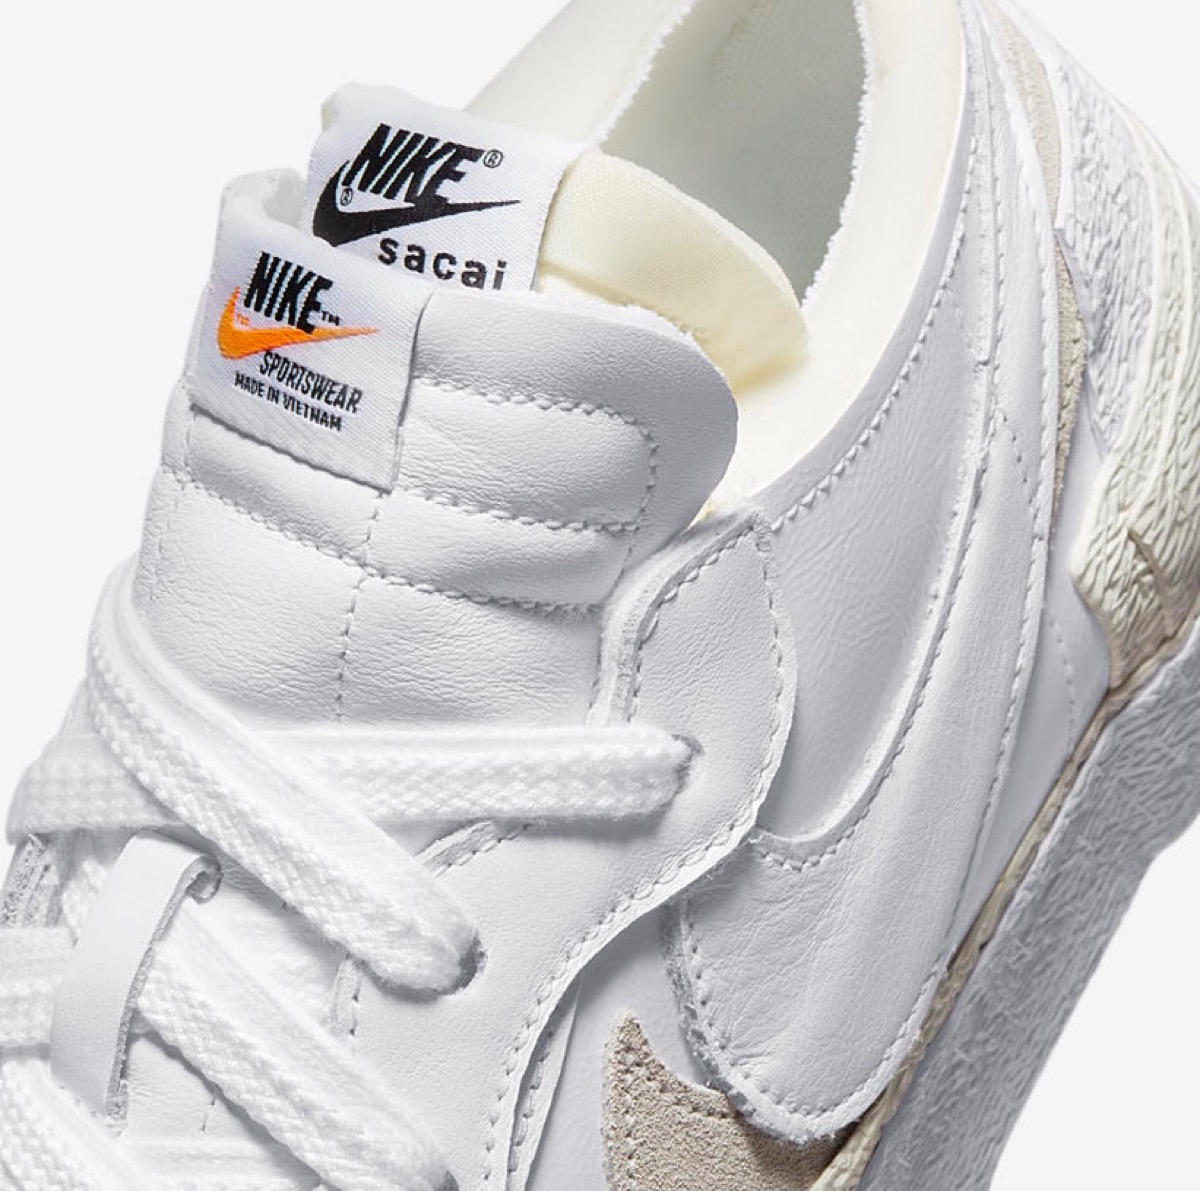 Sacai × Nike】Blazer Low “White Patent” & “Black Patent”が国内3月 